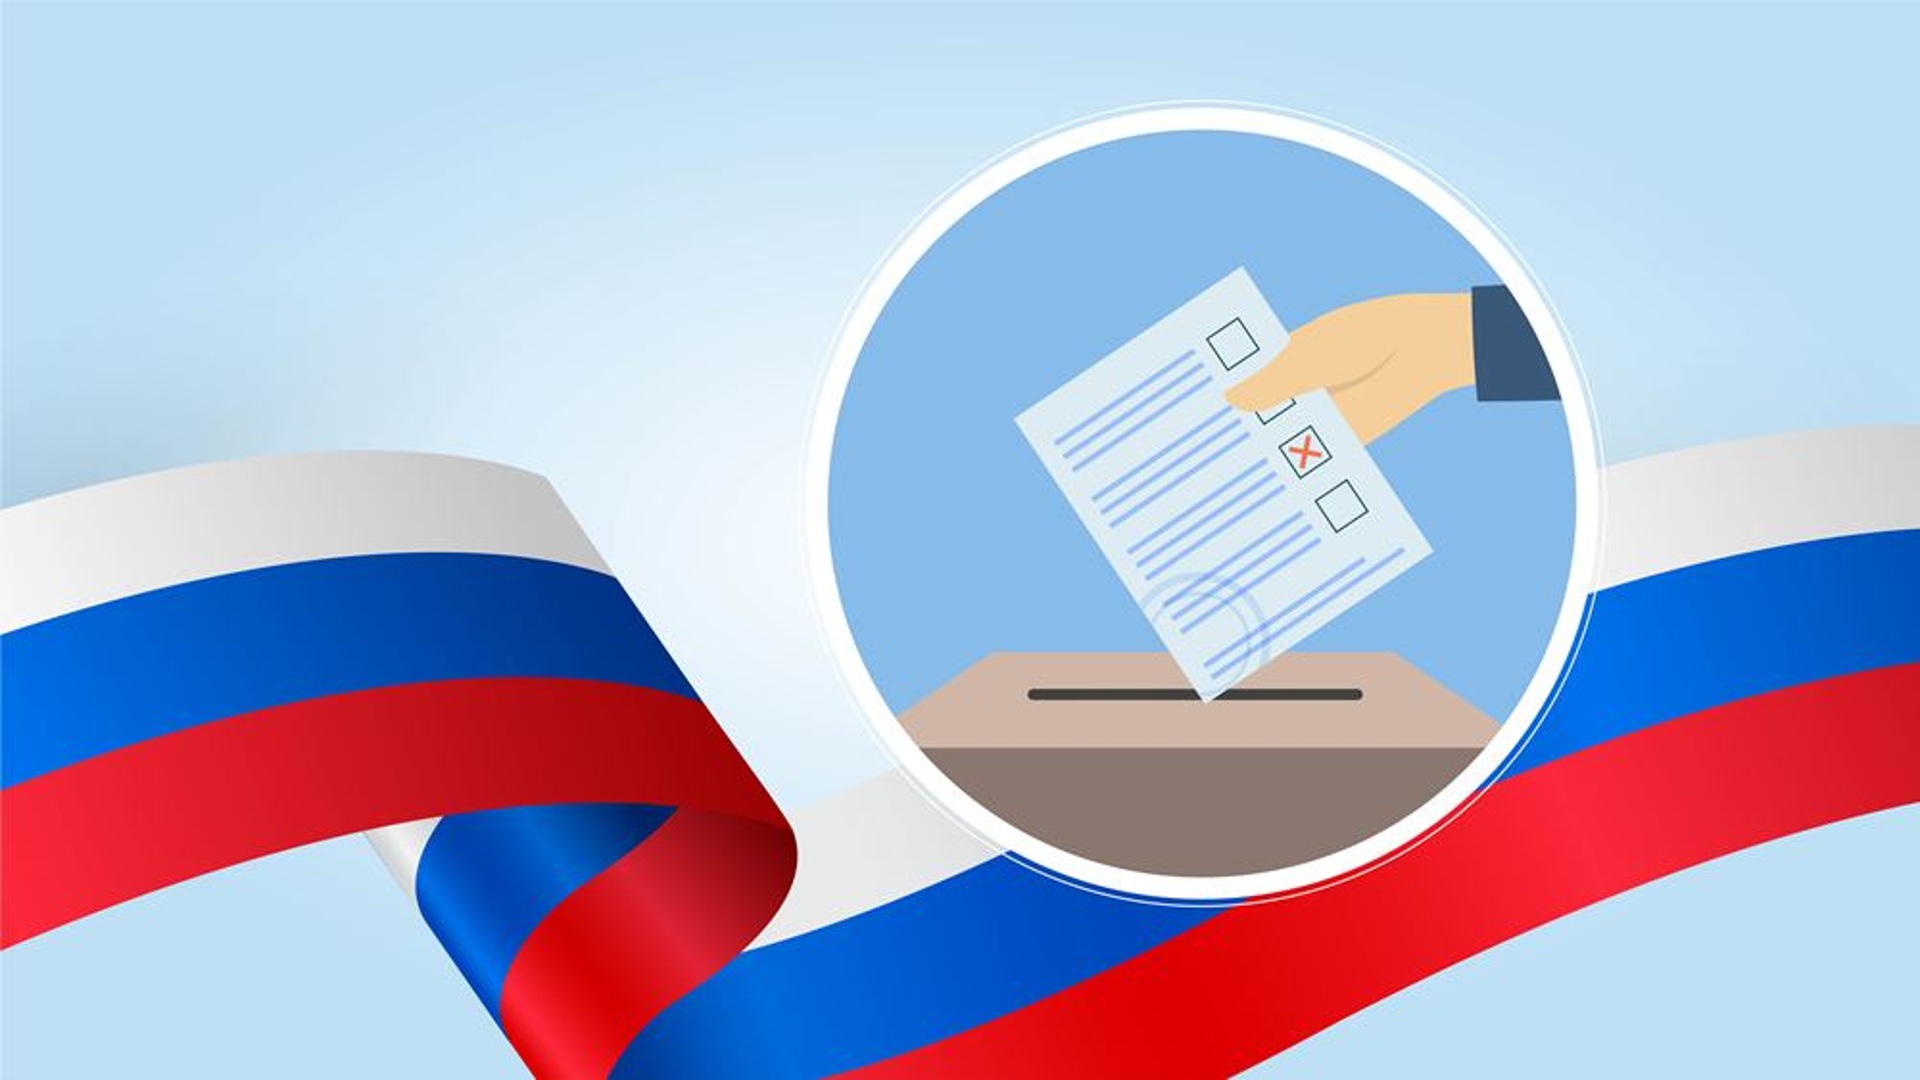 Центральная избирательная комиссия России официально объявила Владимира Путина Президентом страны. На выборах он набрал 87,28% голосов